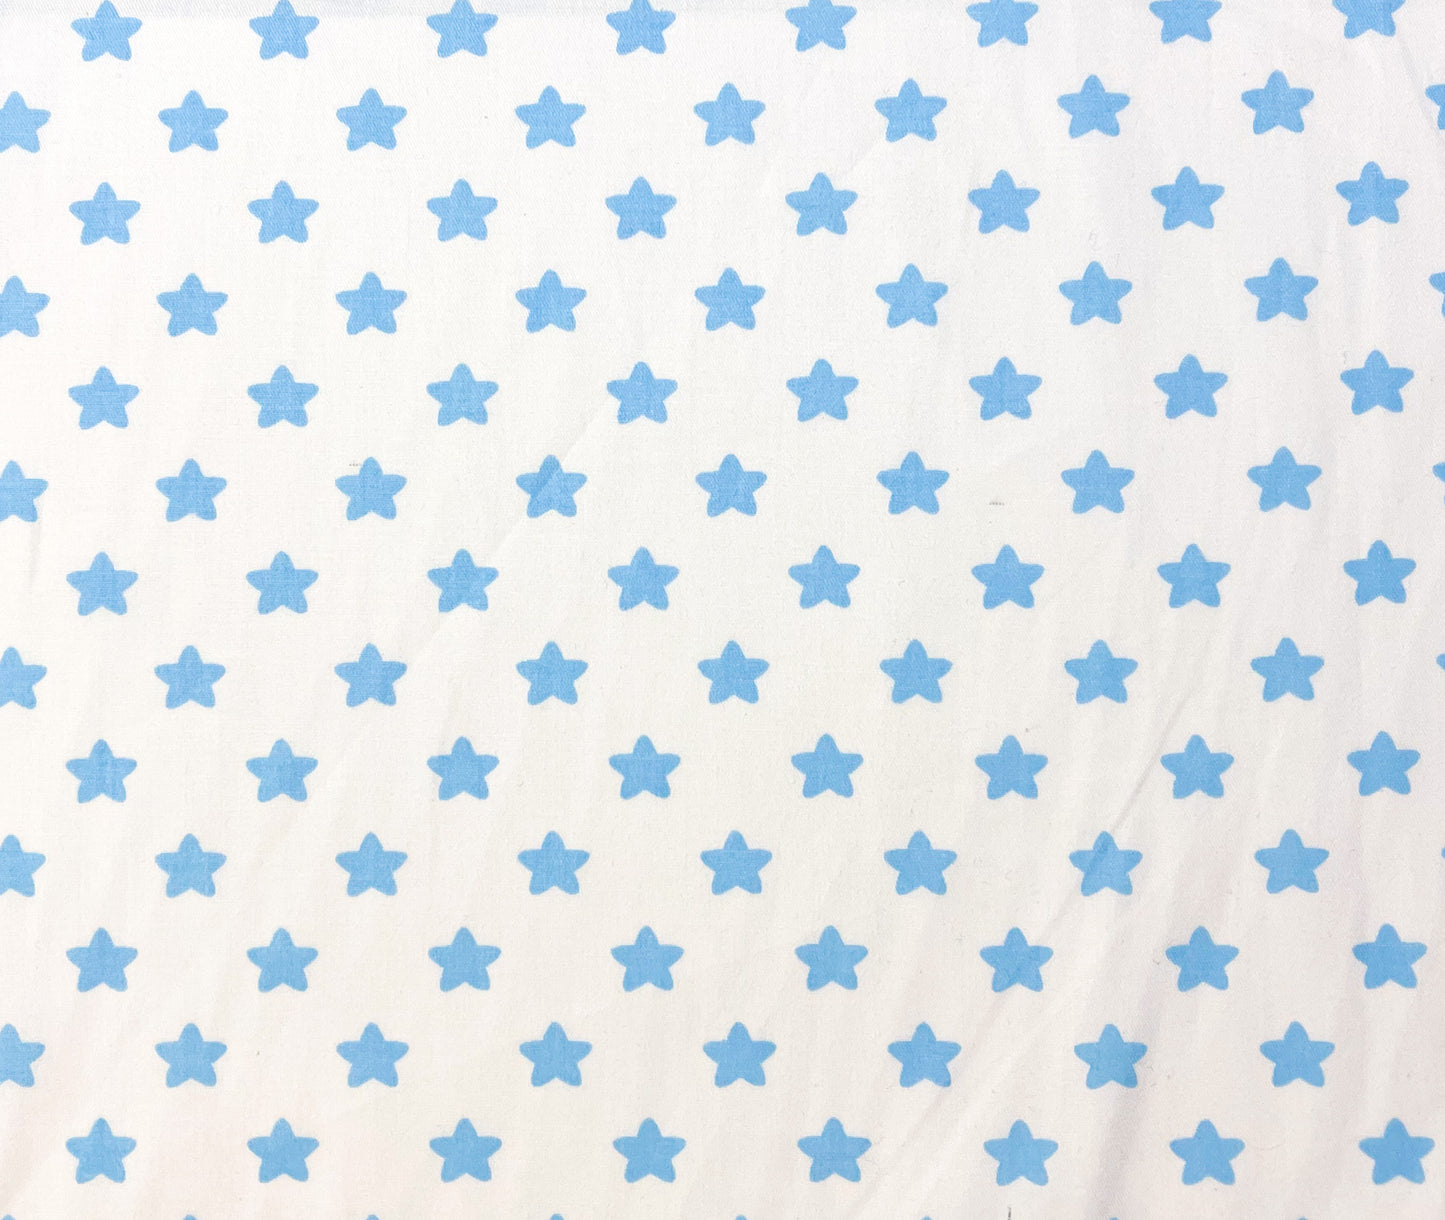 Blue stars on white